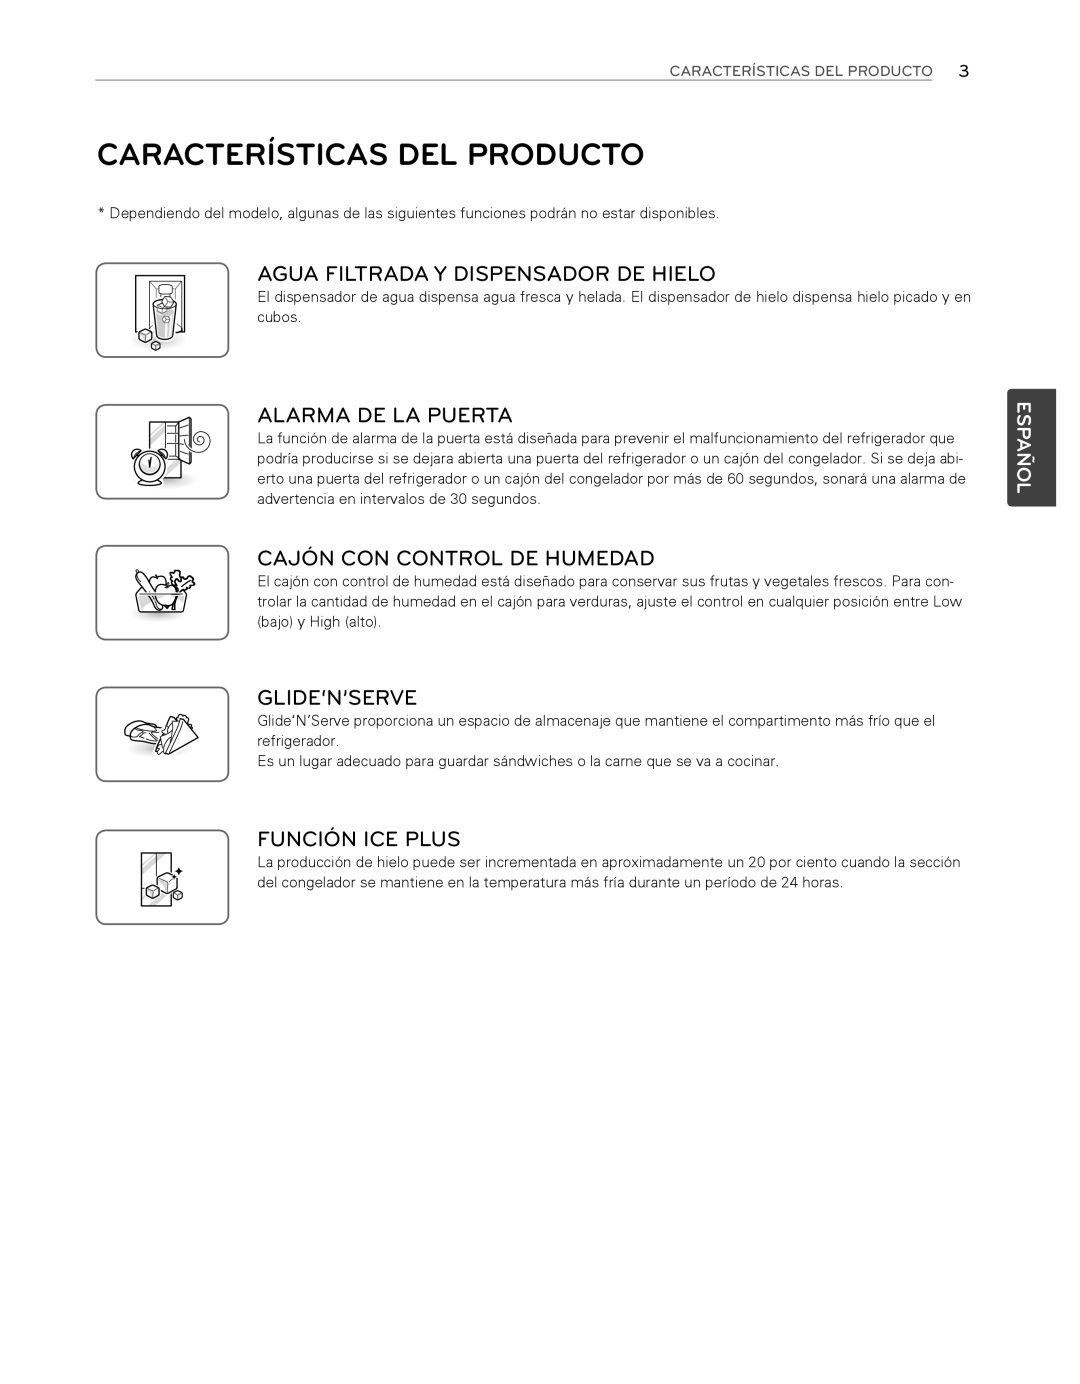 LG Electronics LFX25974ST Características Del Producto, Agua Filtrada Y Dispensador De Hielo, Alarma De La Puerta, Español 